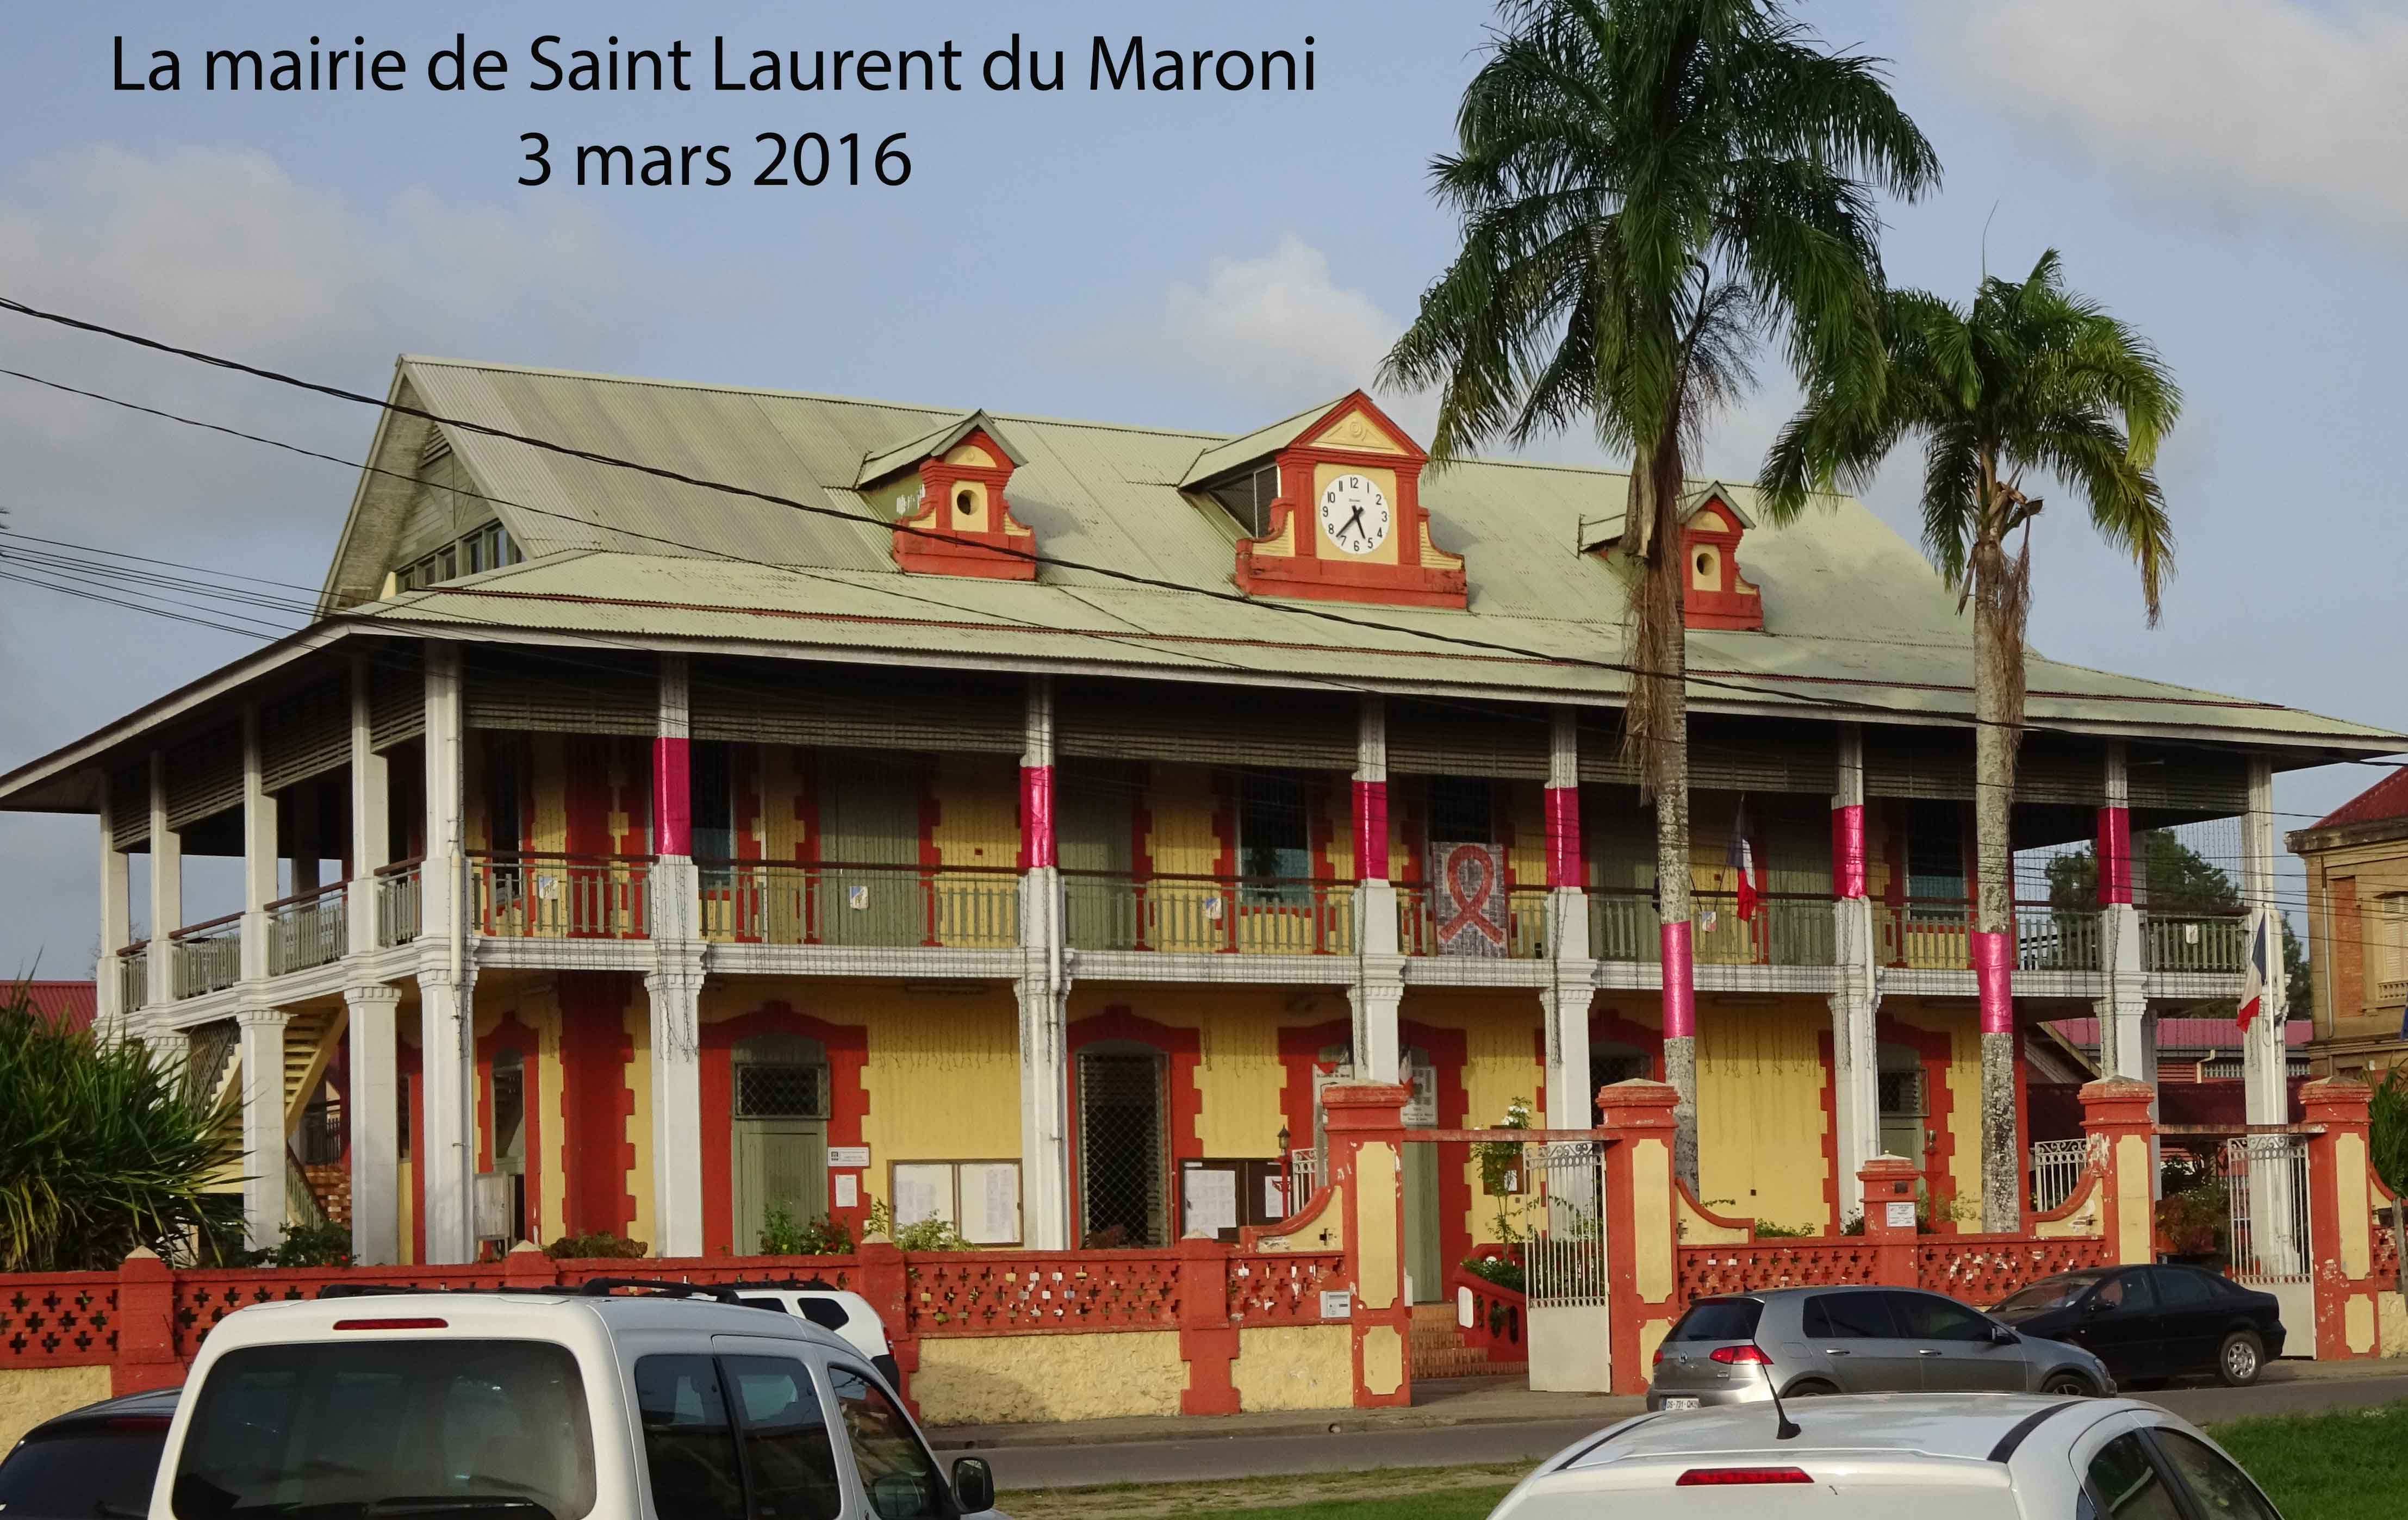 Colloque à Saint Laurent du Maroni, 20 et 21 mars 2017 : réunion à Avignon et appel à communications